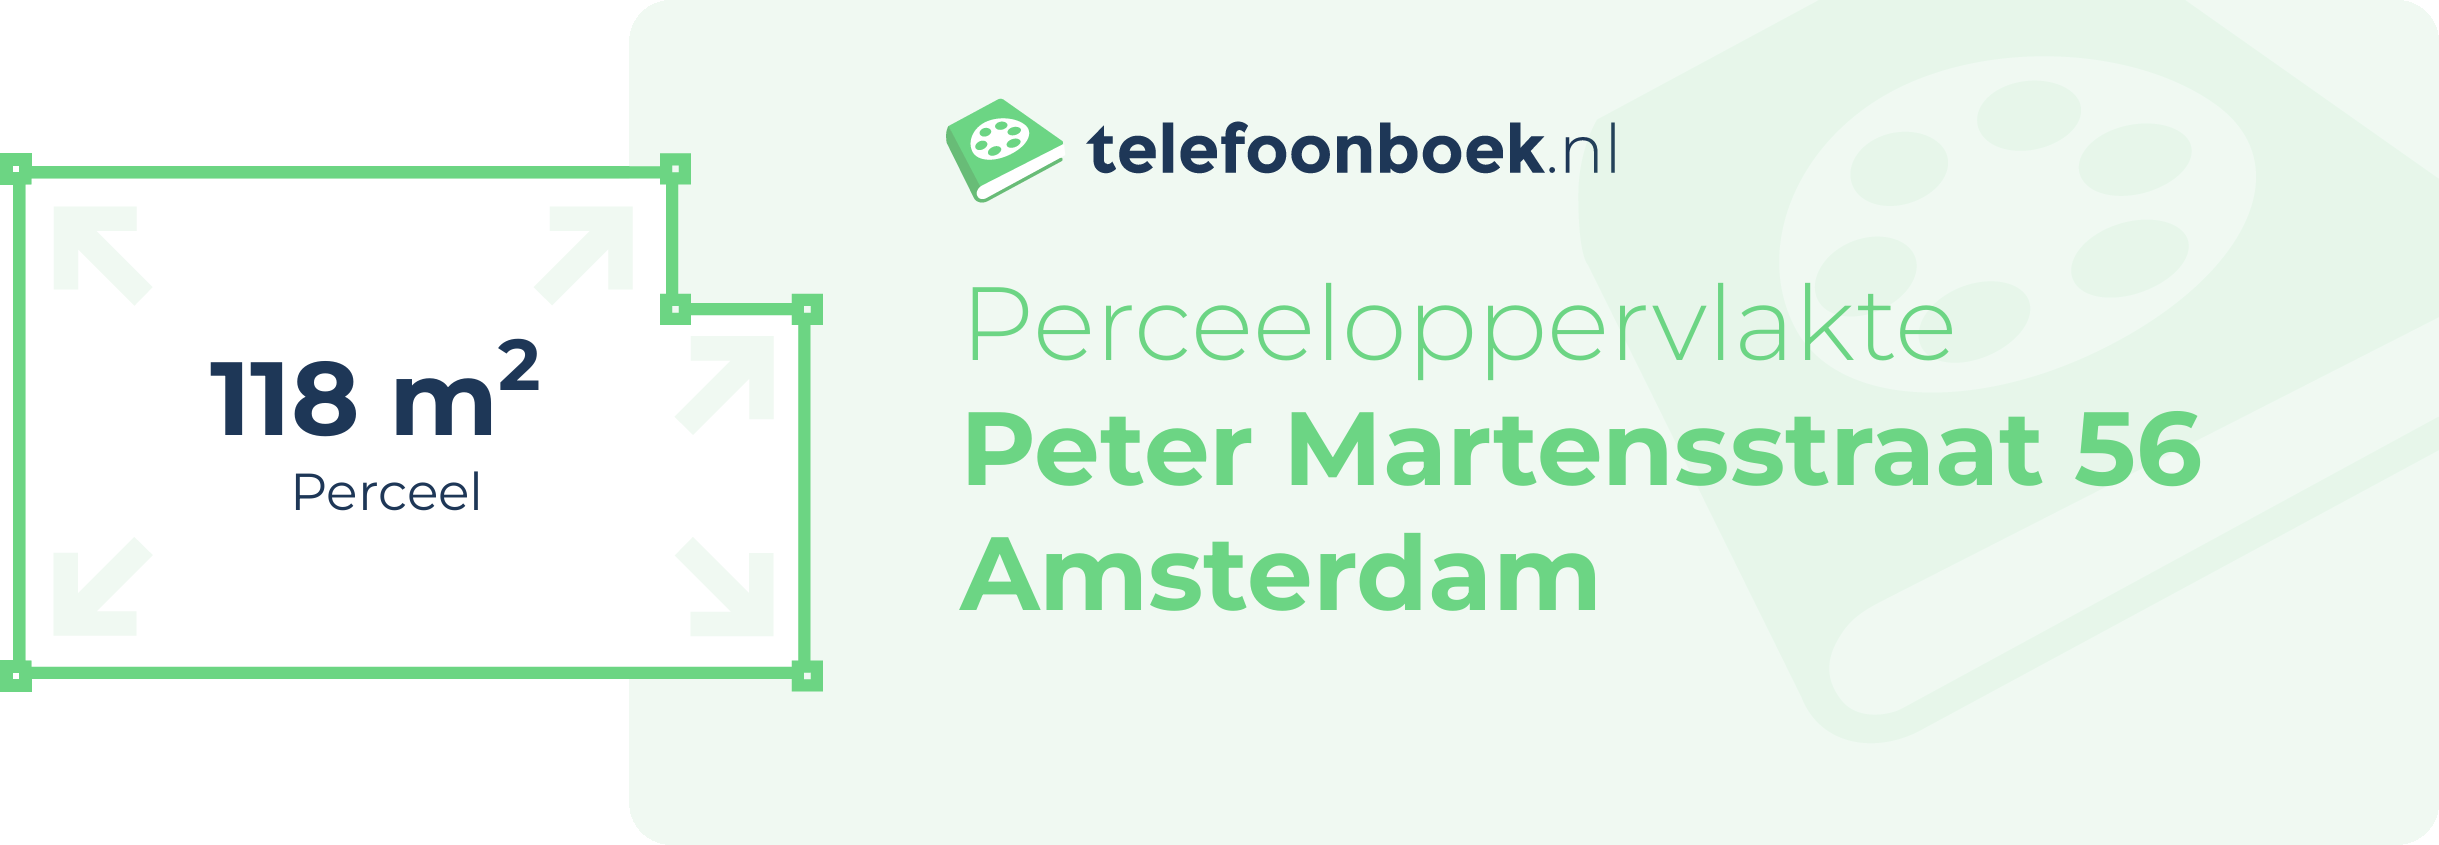 Perceeloppervlakte Peter Martensstraat 56 Amsterdam